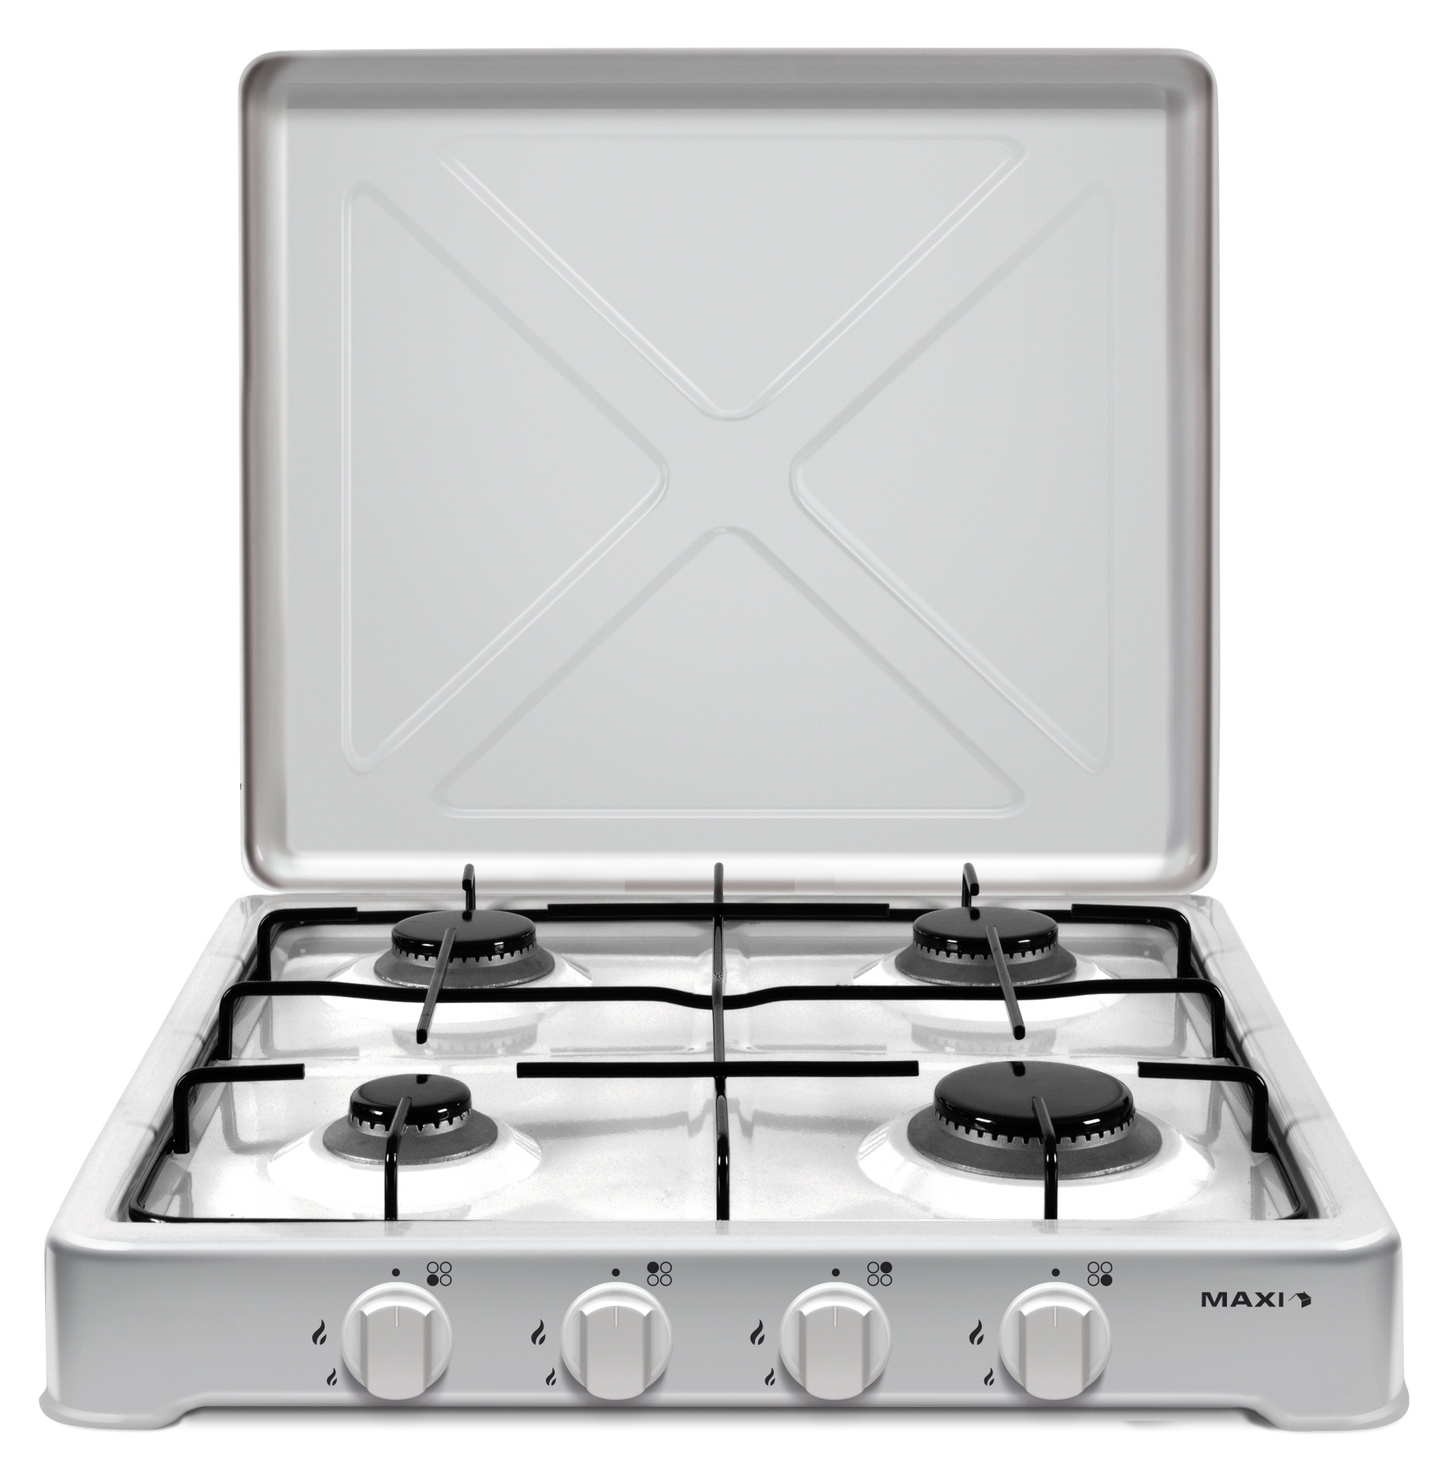 Maxi Tabletop Gas Cooker  maxi400